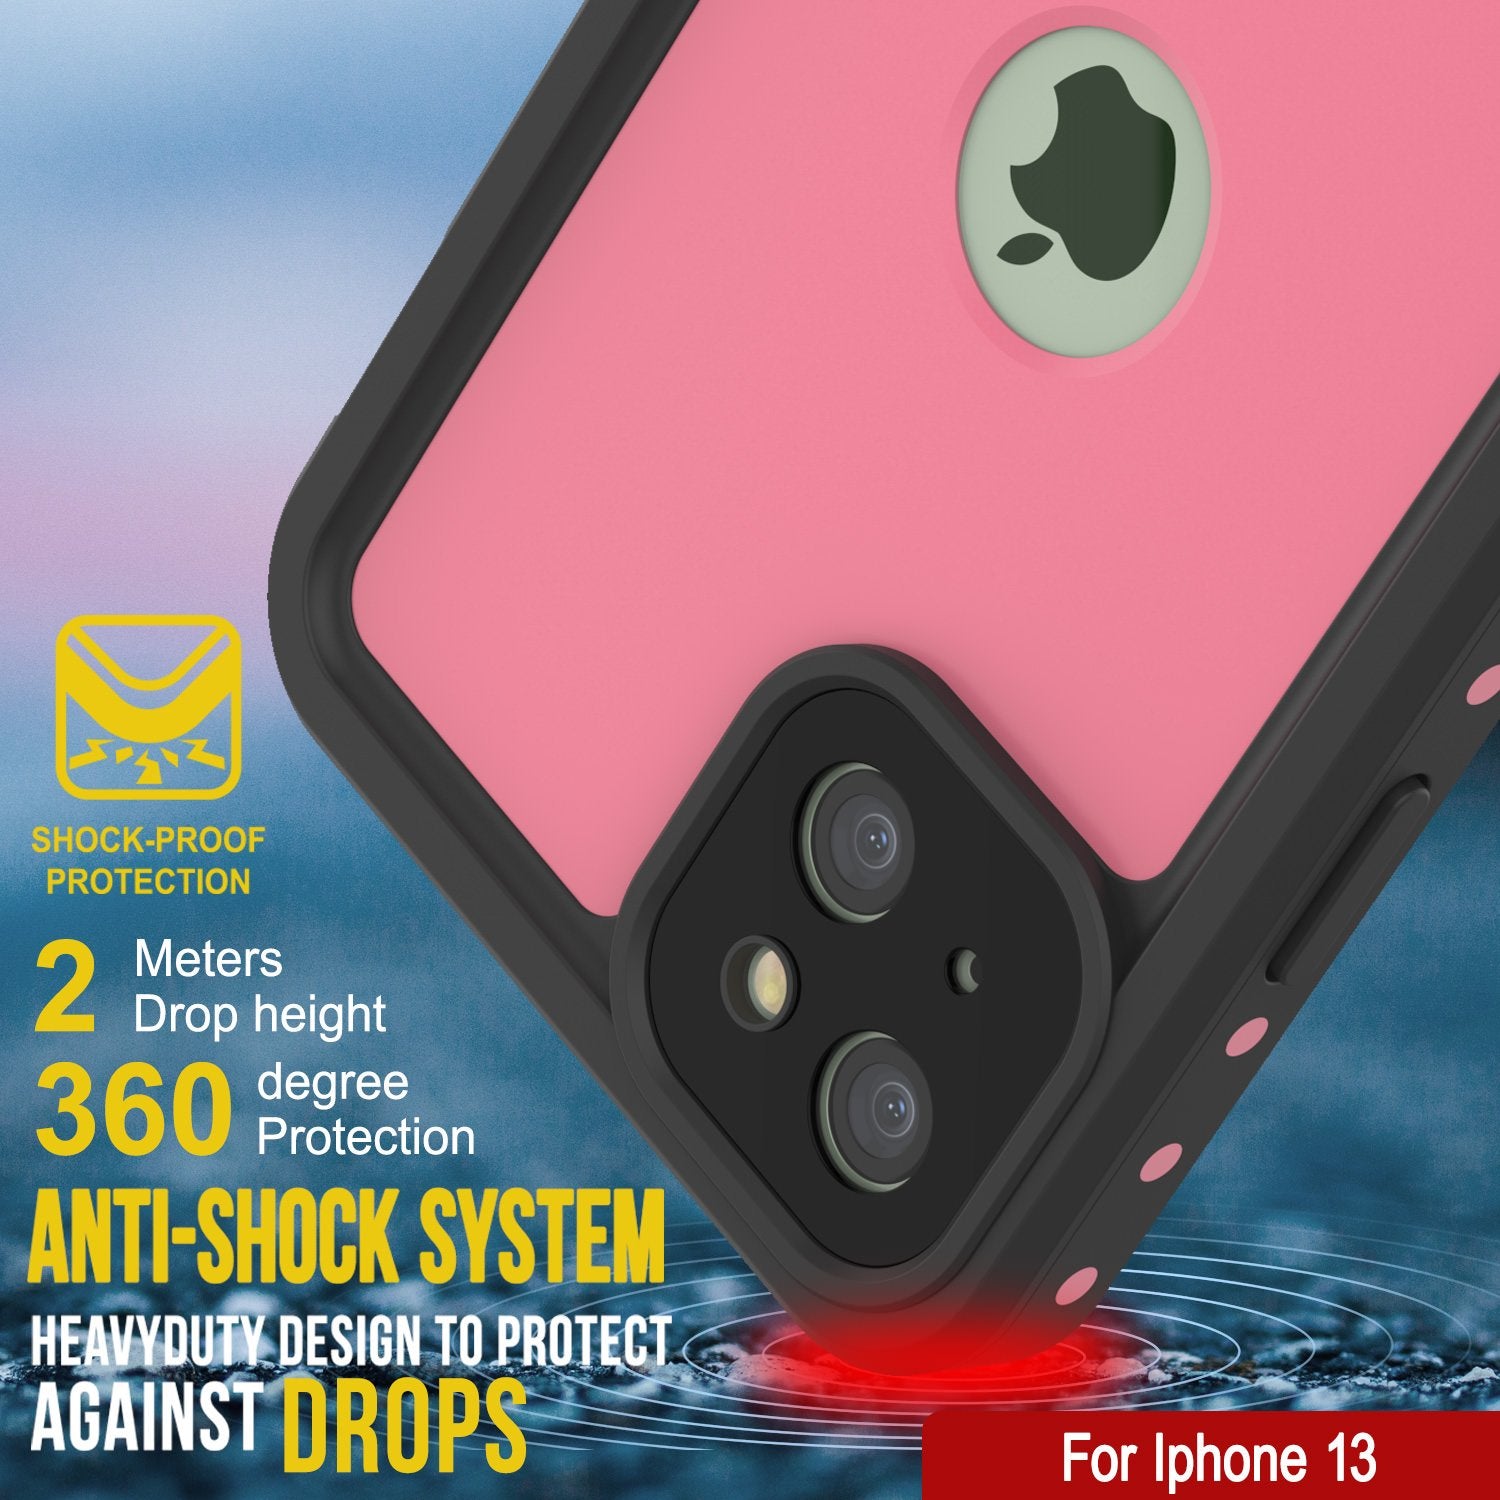 iPhone 13 Waterproof IP68 Case, Punkcase [Pink] [StudStar Series] [Slim Fit] [Dirtproof]